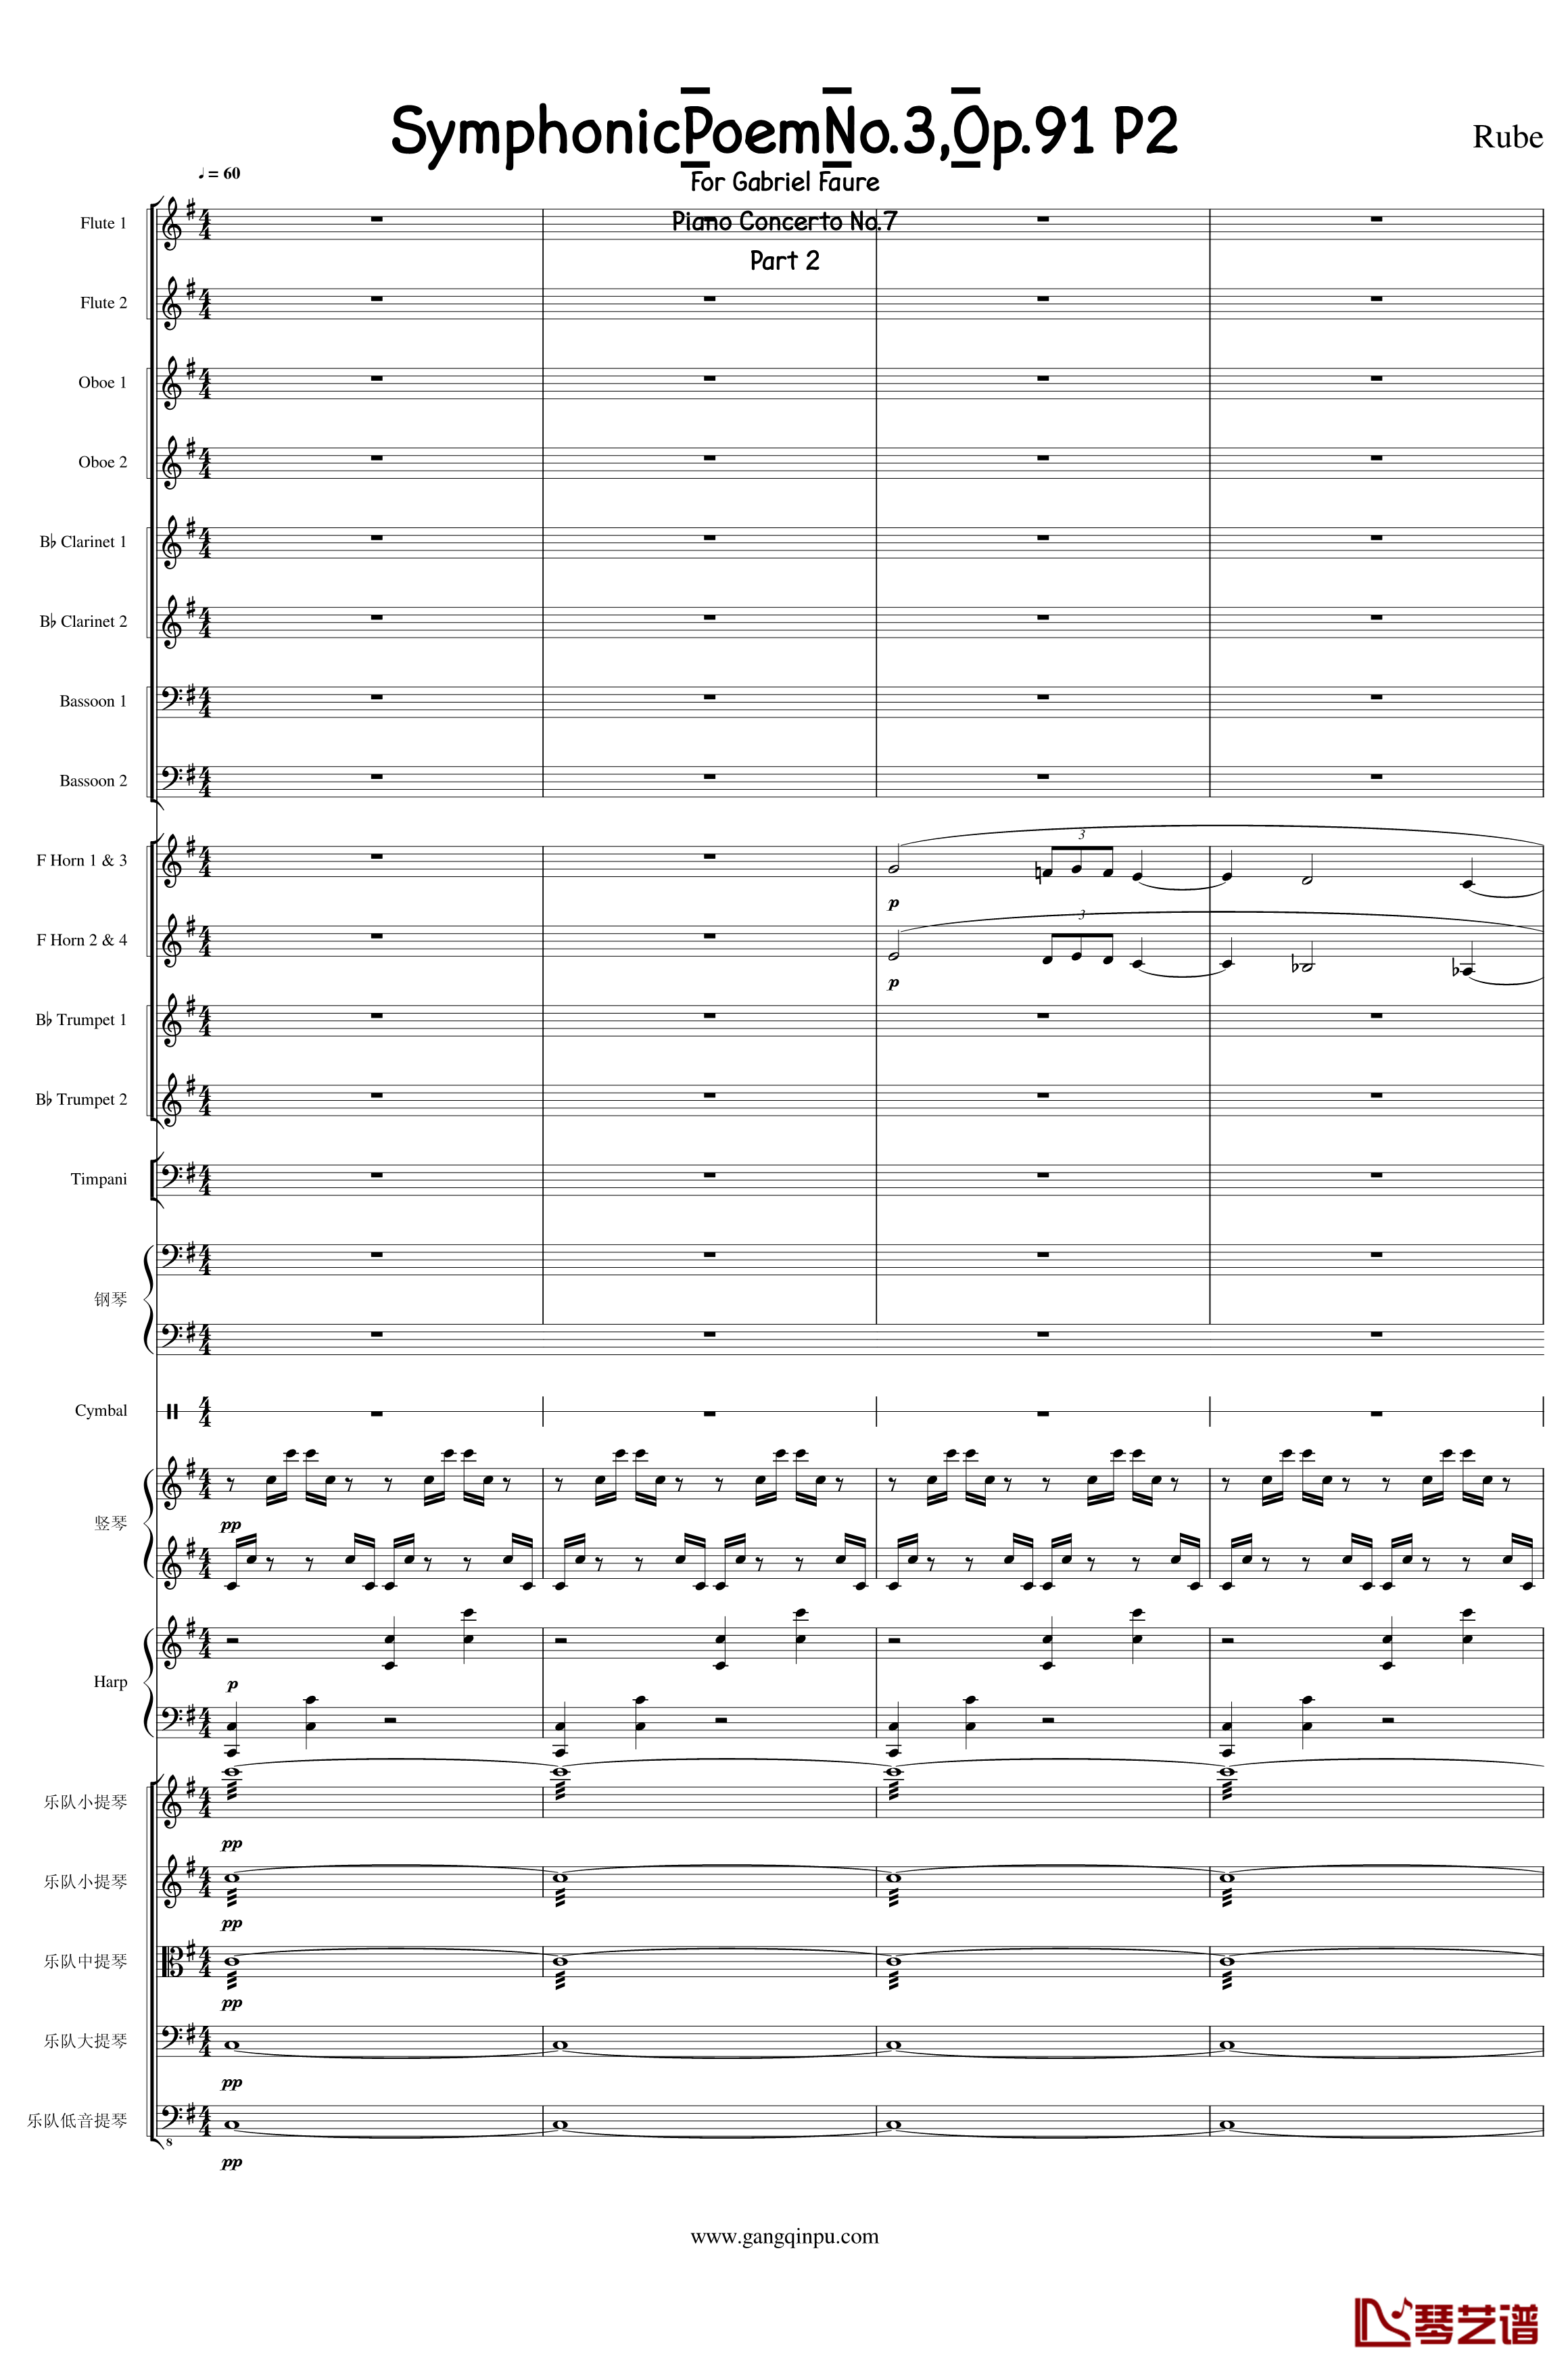 Symphonic Poem No.3, Op.91 Part 2钢琴谱-一个球1